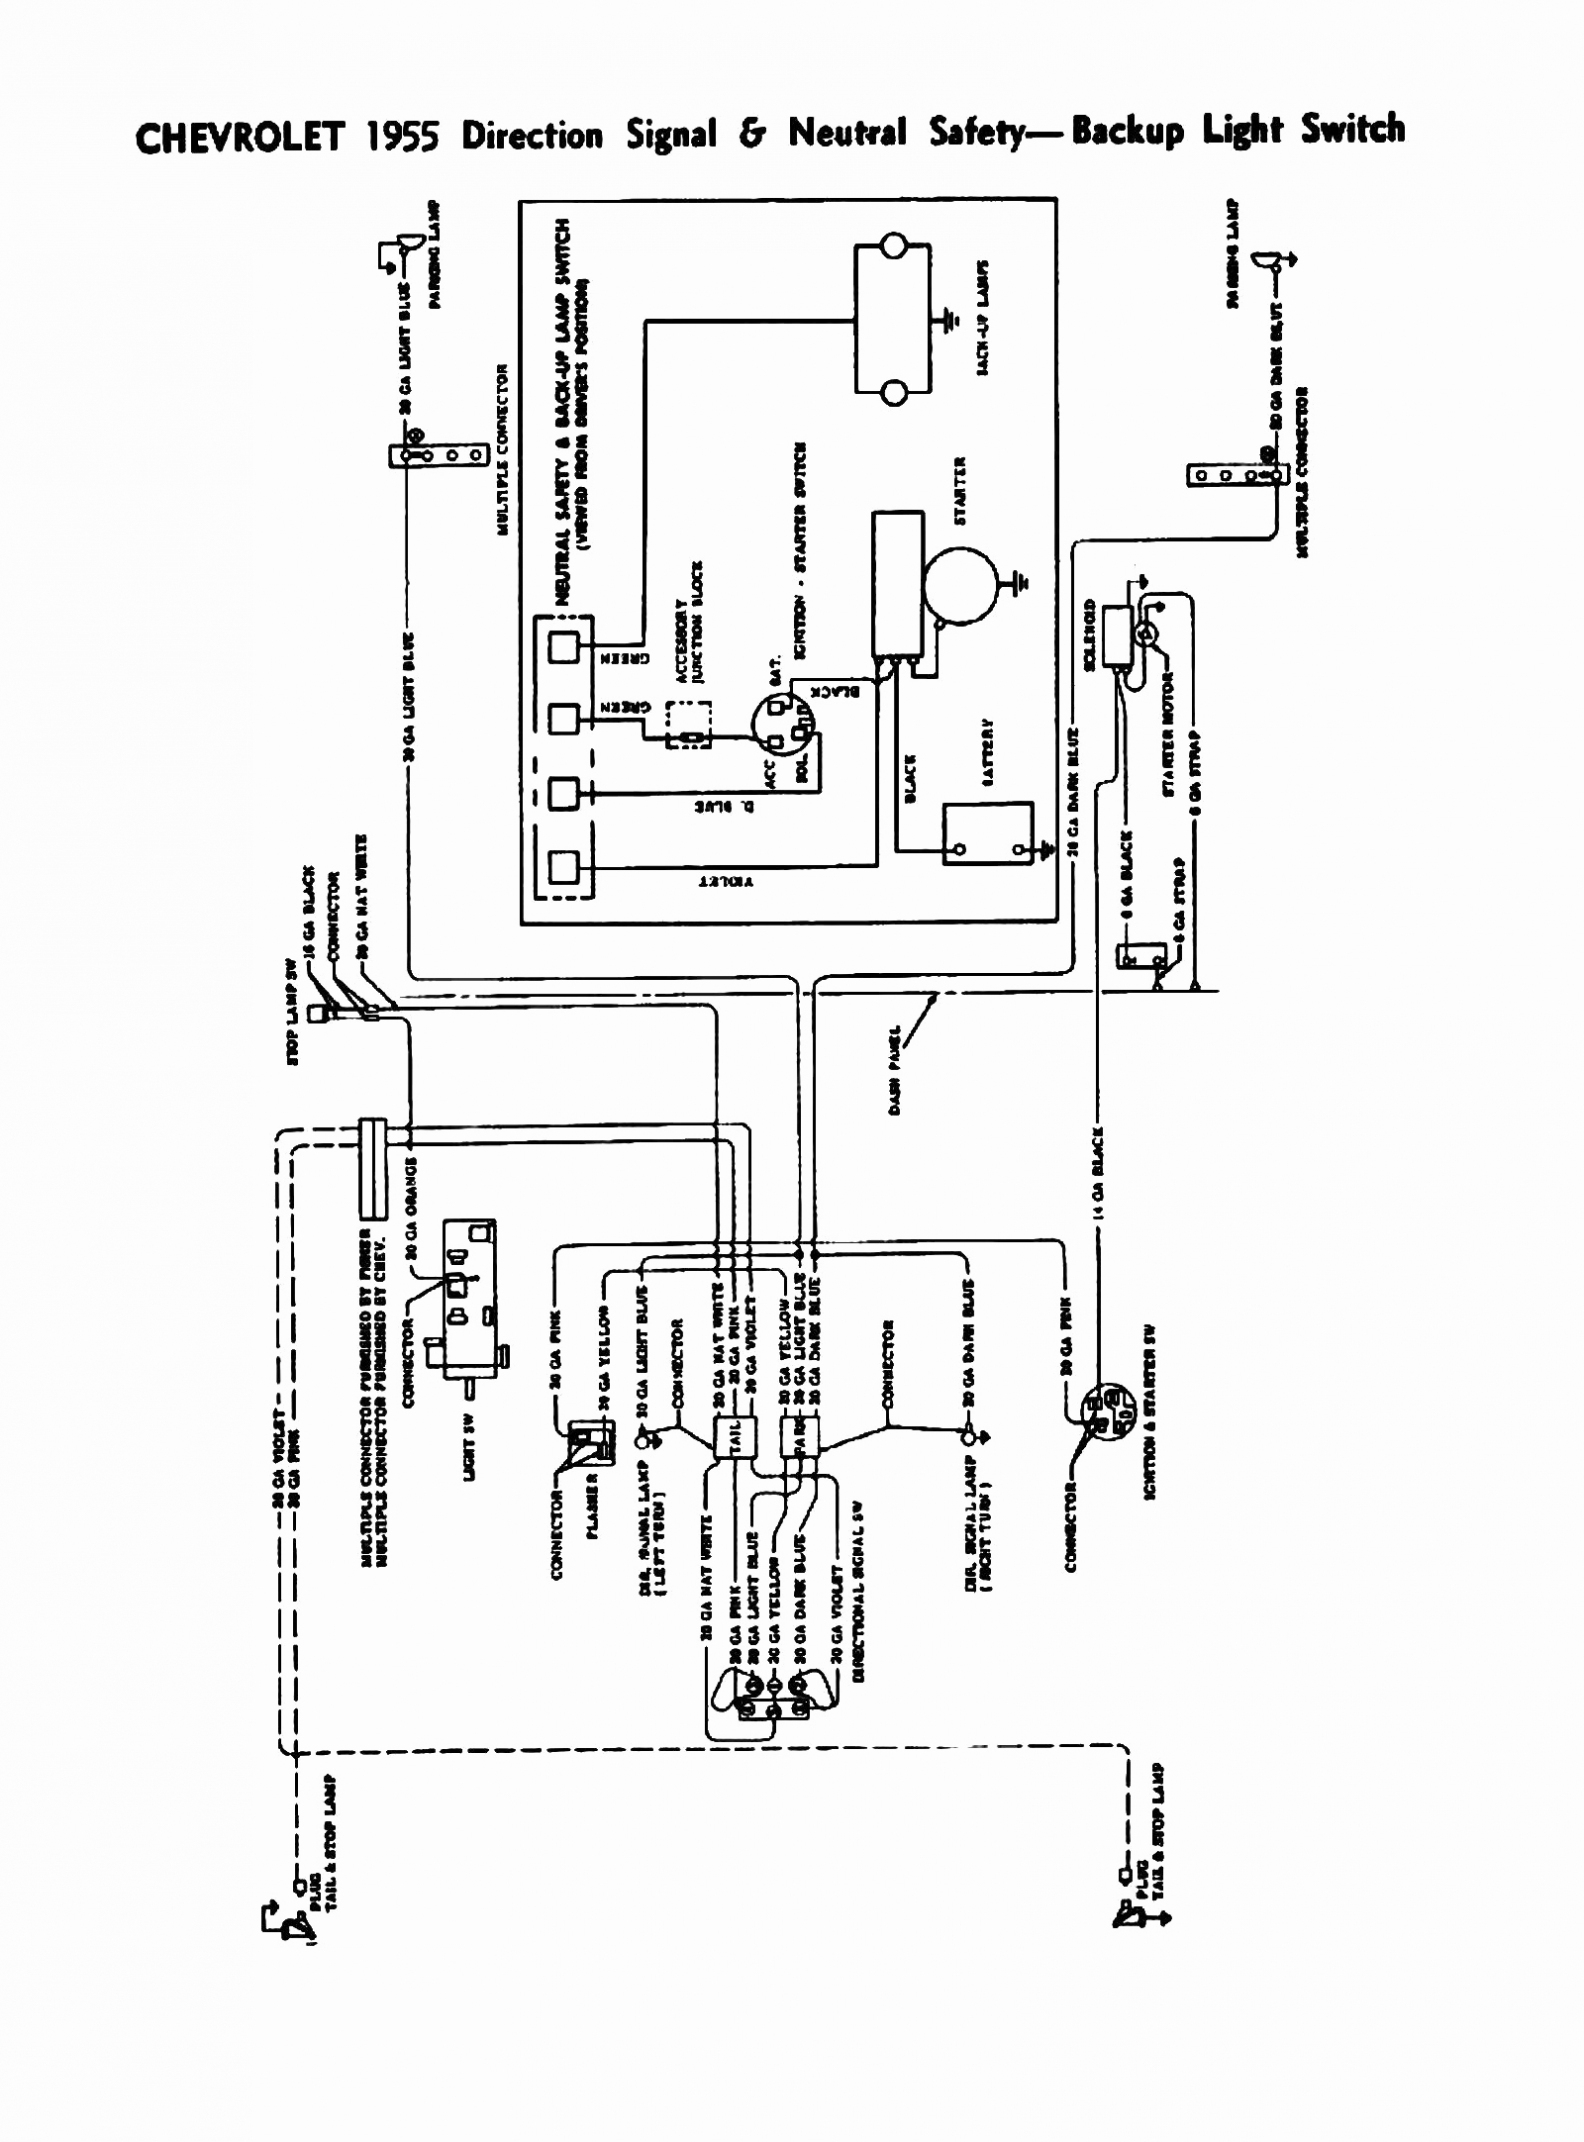 Chevy Turn Signal Wiring Schematic | Wiring Diagram - Universal Turn Signal Switch Wiring Diagram